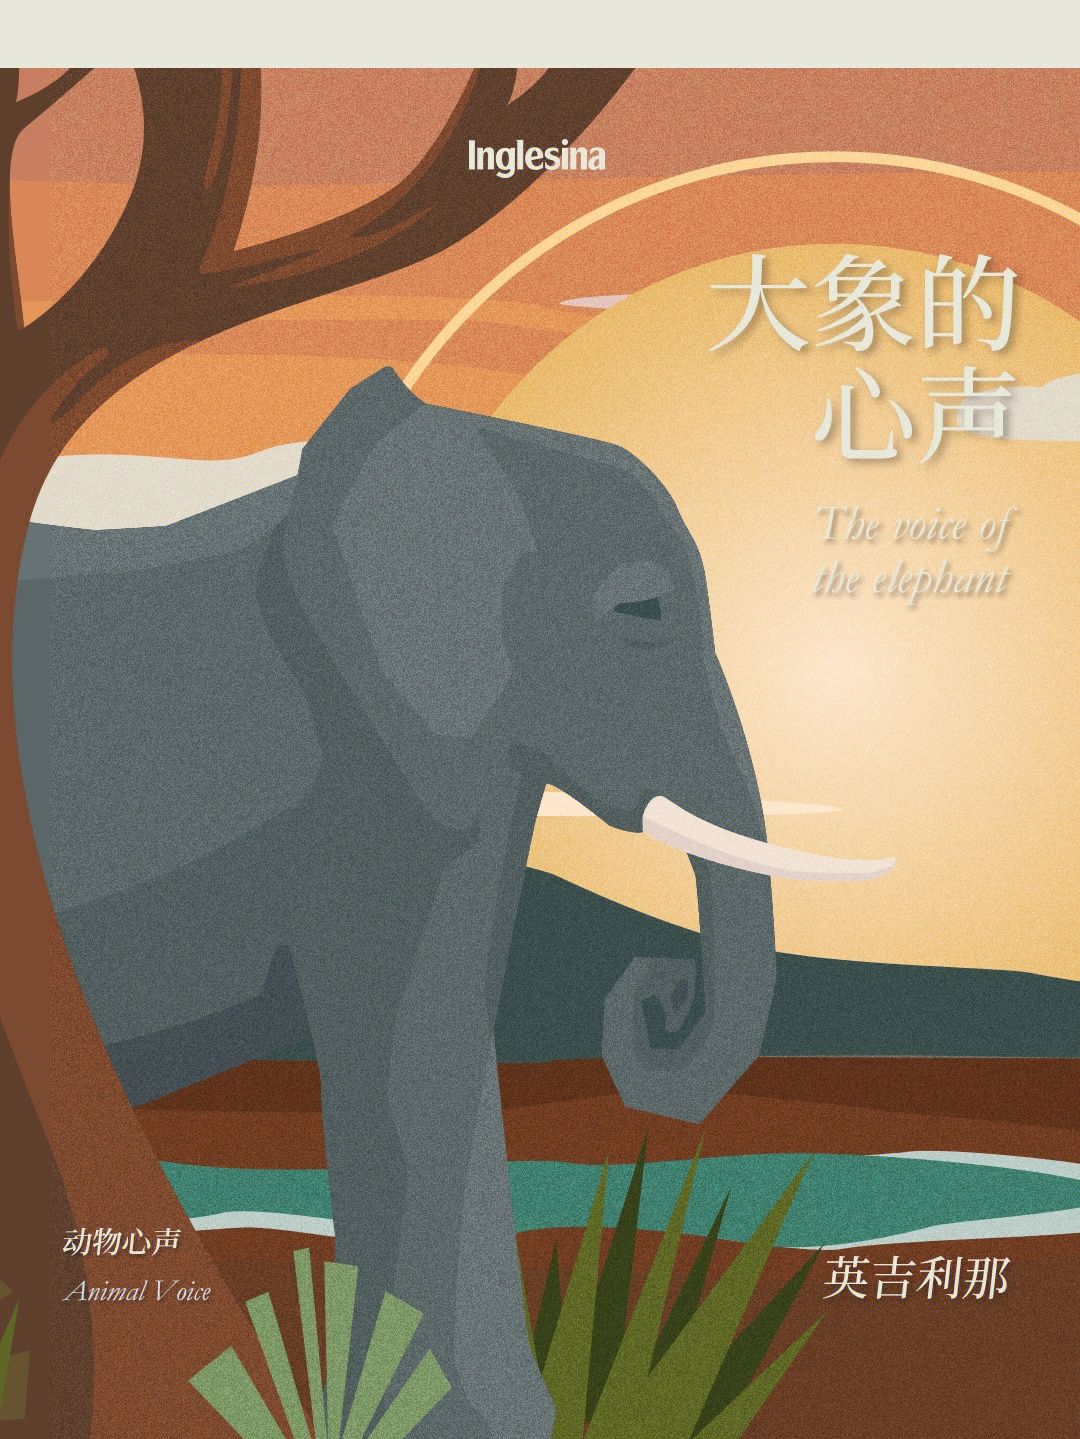 保护大象英文海报图片